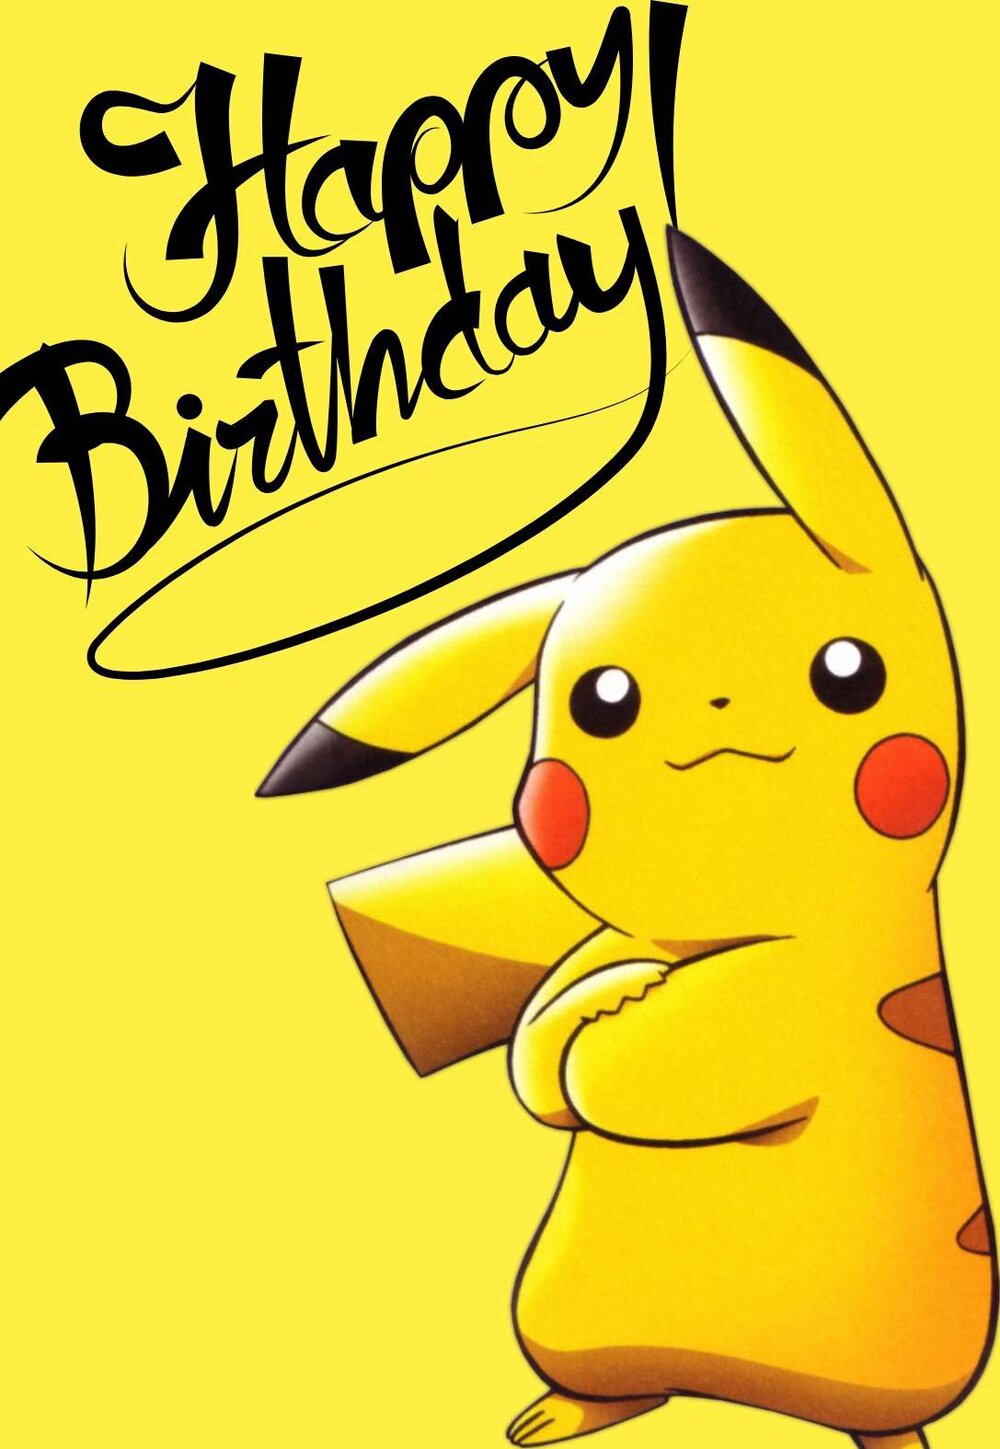 Pokemon Birthday Card Printable Free